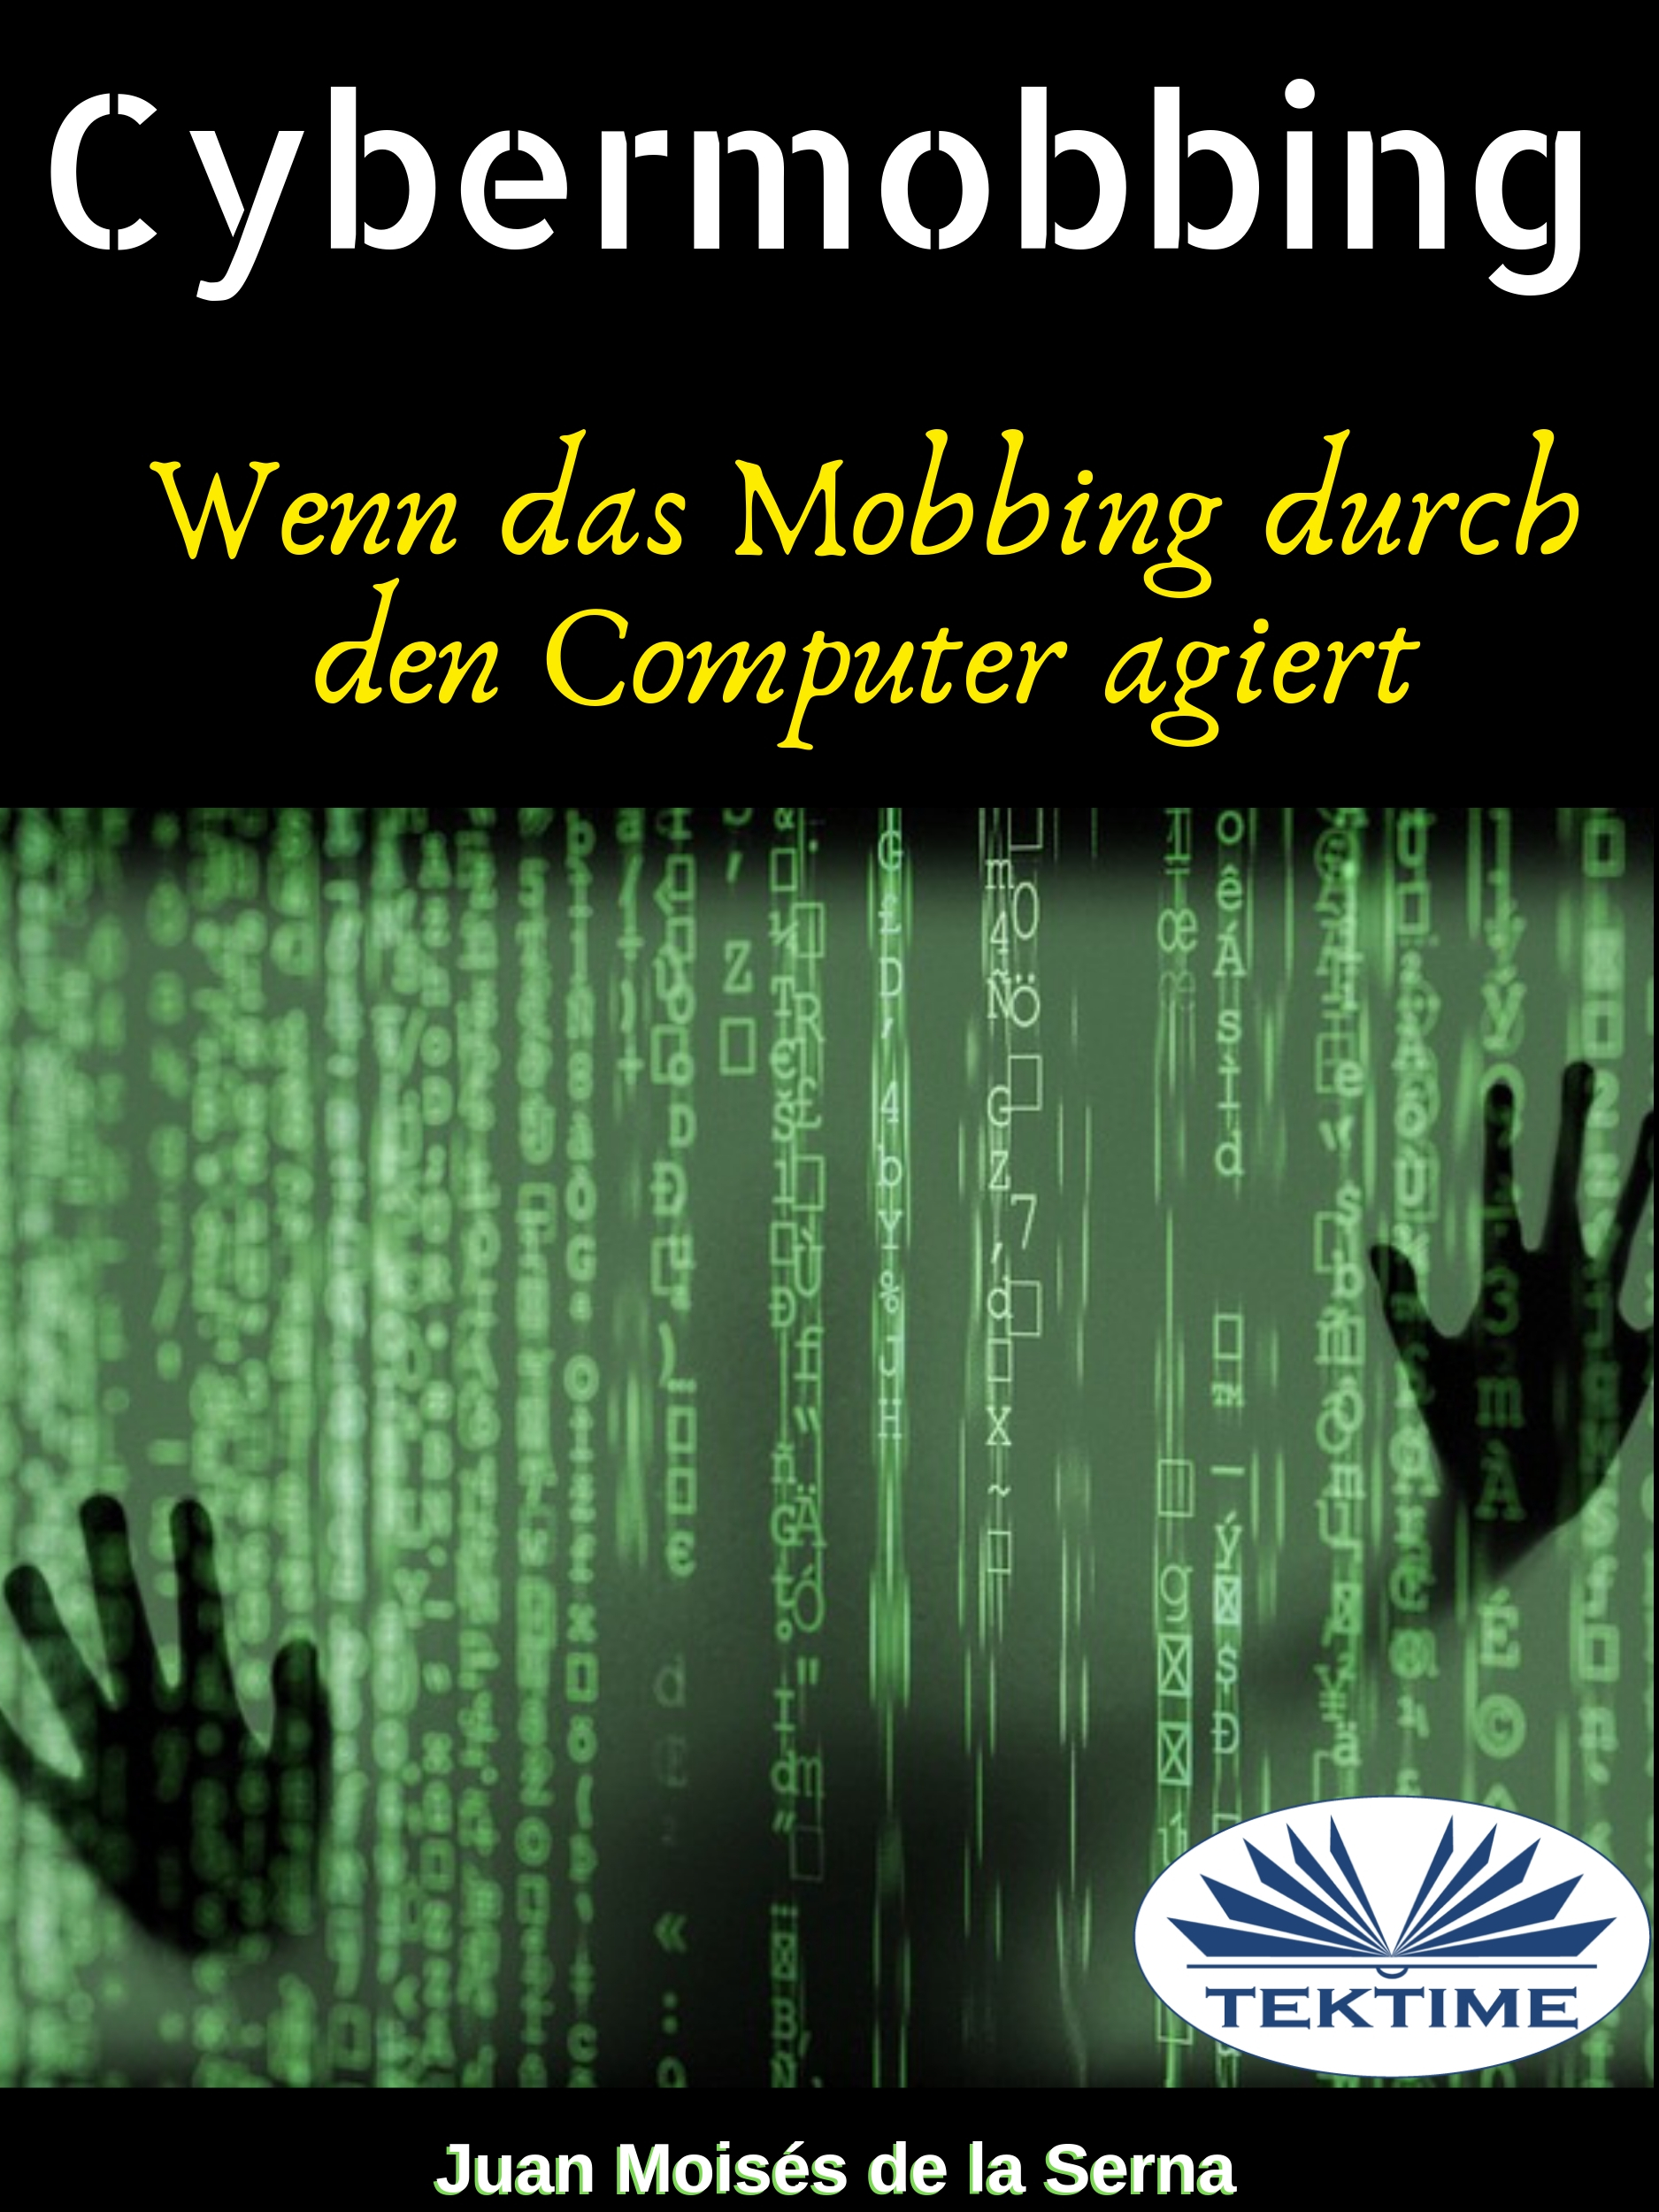 Книга  Cybermobbing созданная Dr. Juan Moisés De La Serna может относится к жанру зарубежная компьютерная литература, книги о компьютерах. Стоимость электронной книги Cybermobbing с идентификатором 65971354 составляет 782.44 руб.